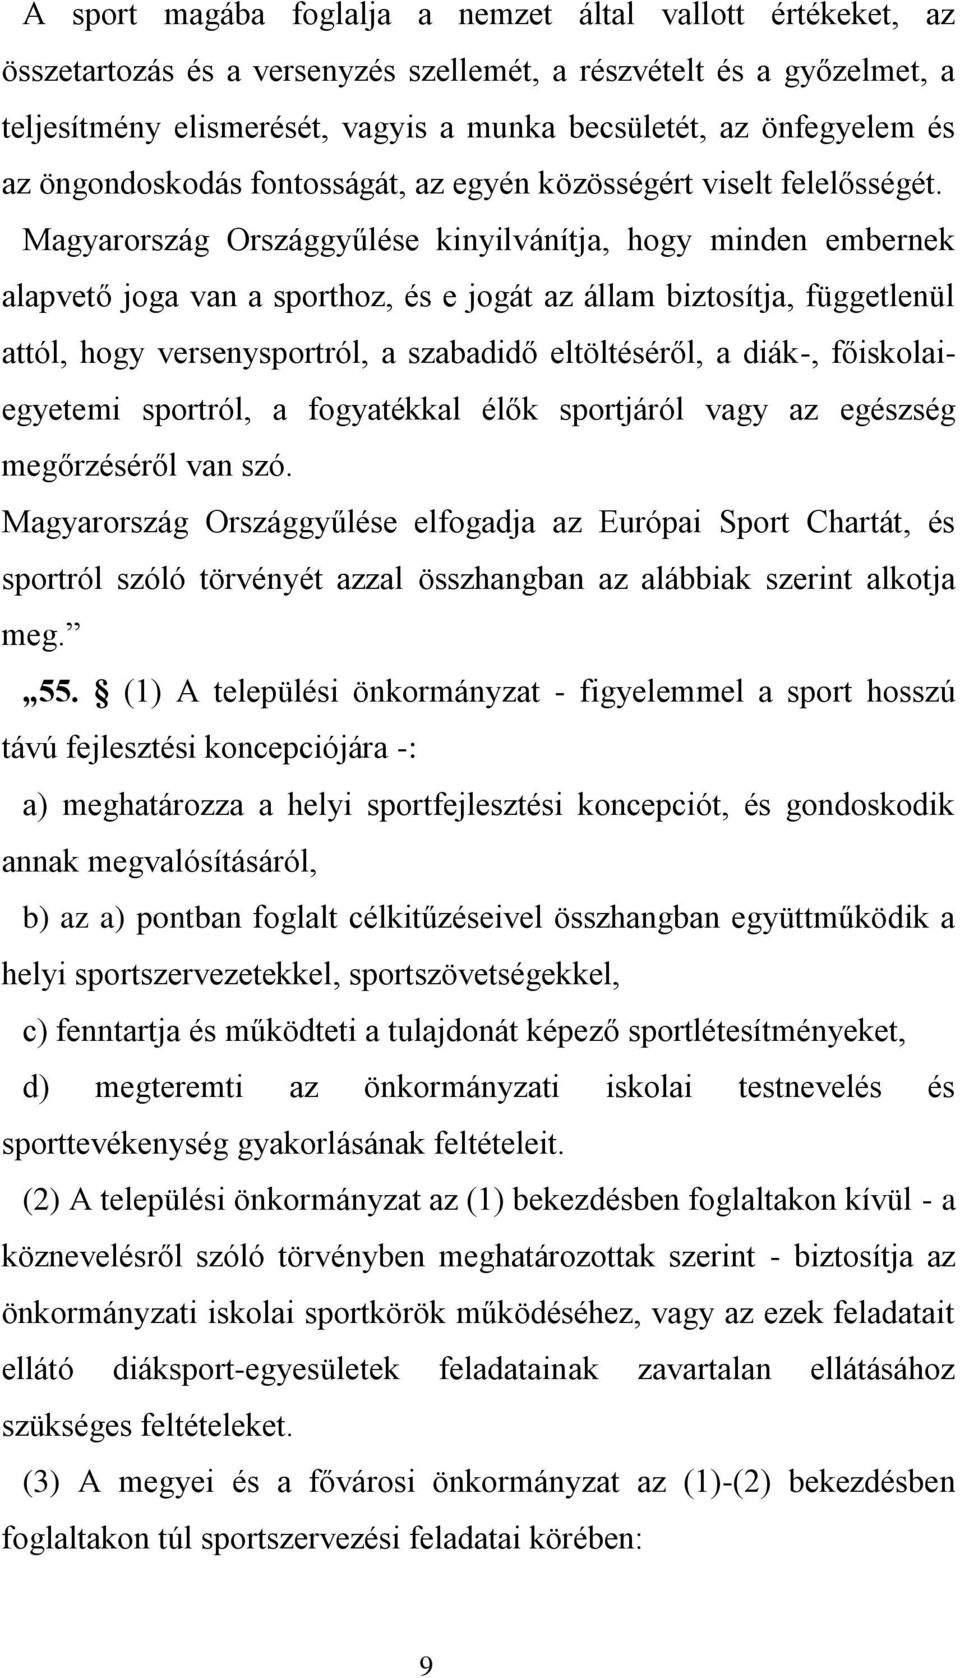 Magyarország Országgyűlése kinyilvánítja, hogy minden embernek alapvető joga van a sporthoz, és e jogát az állam biztosítja, függetlenül attól, hogy versenysportról, a szabadidő eltöltéséről, a